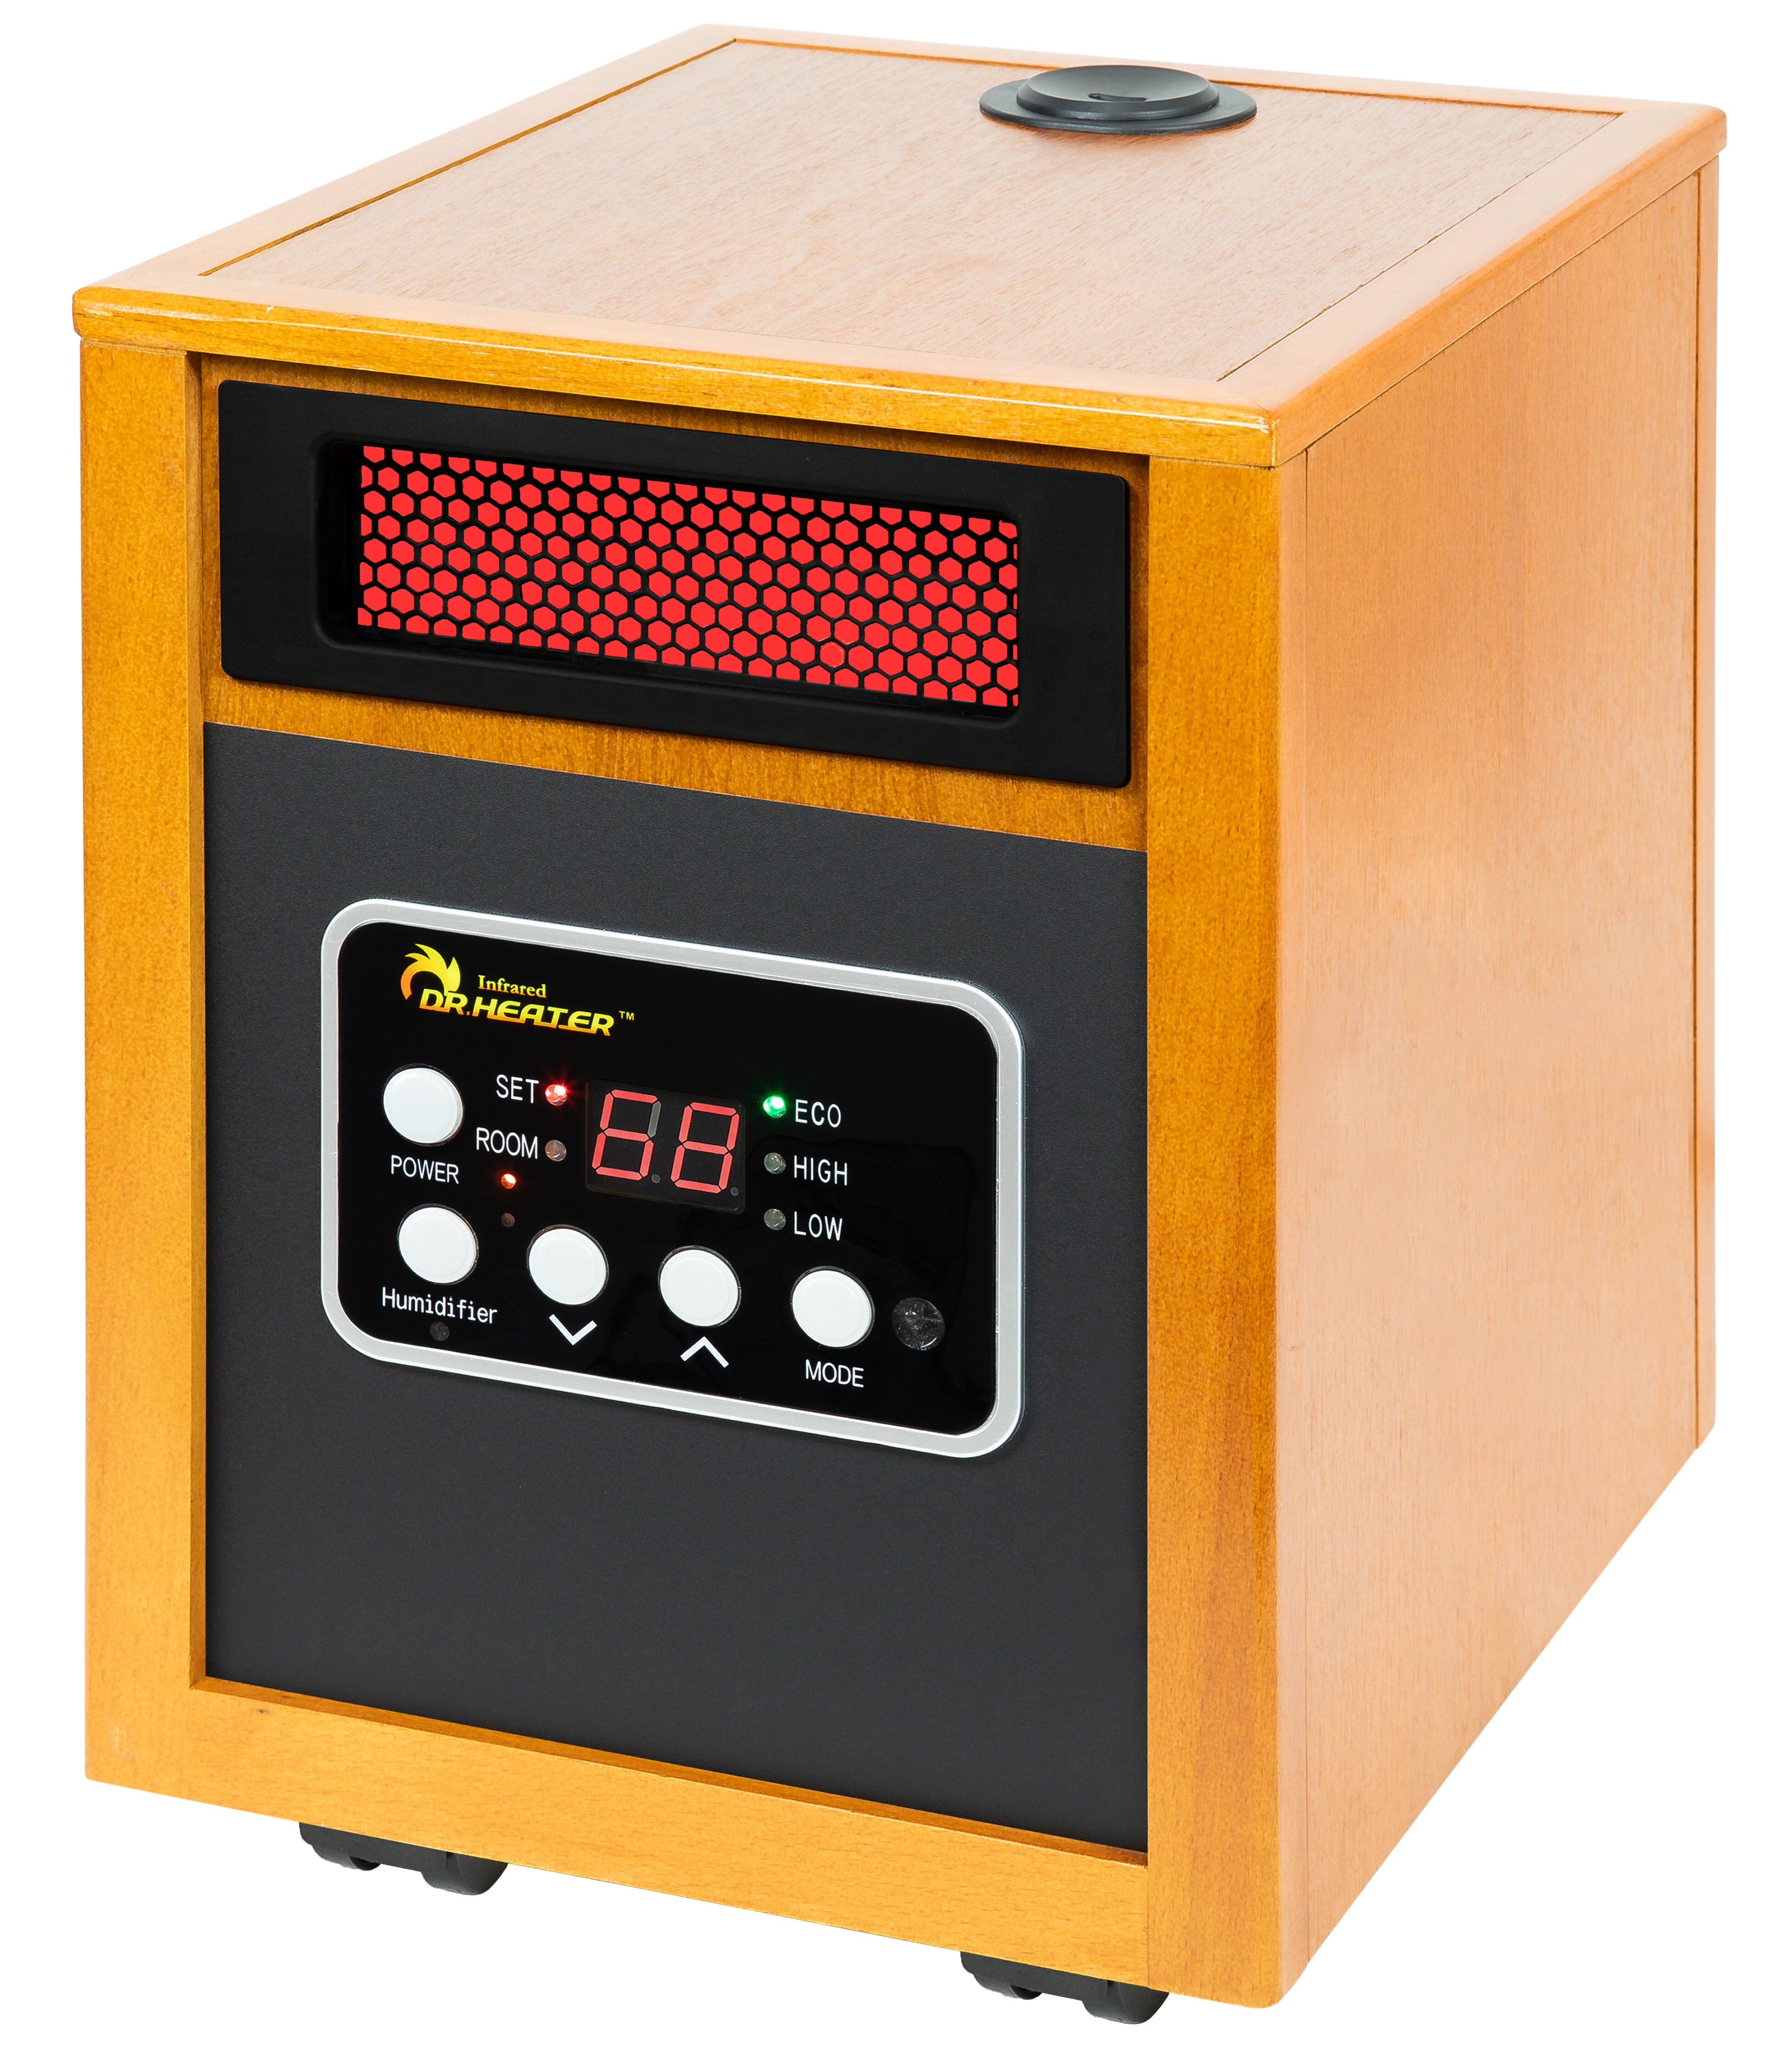 KESSER® Infrared Heater, Energy-Saving, Infrared Standing Device